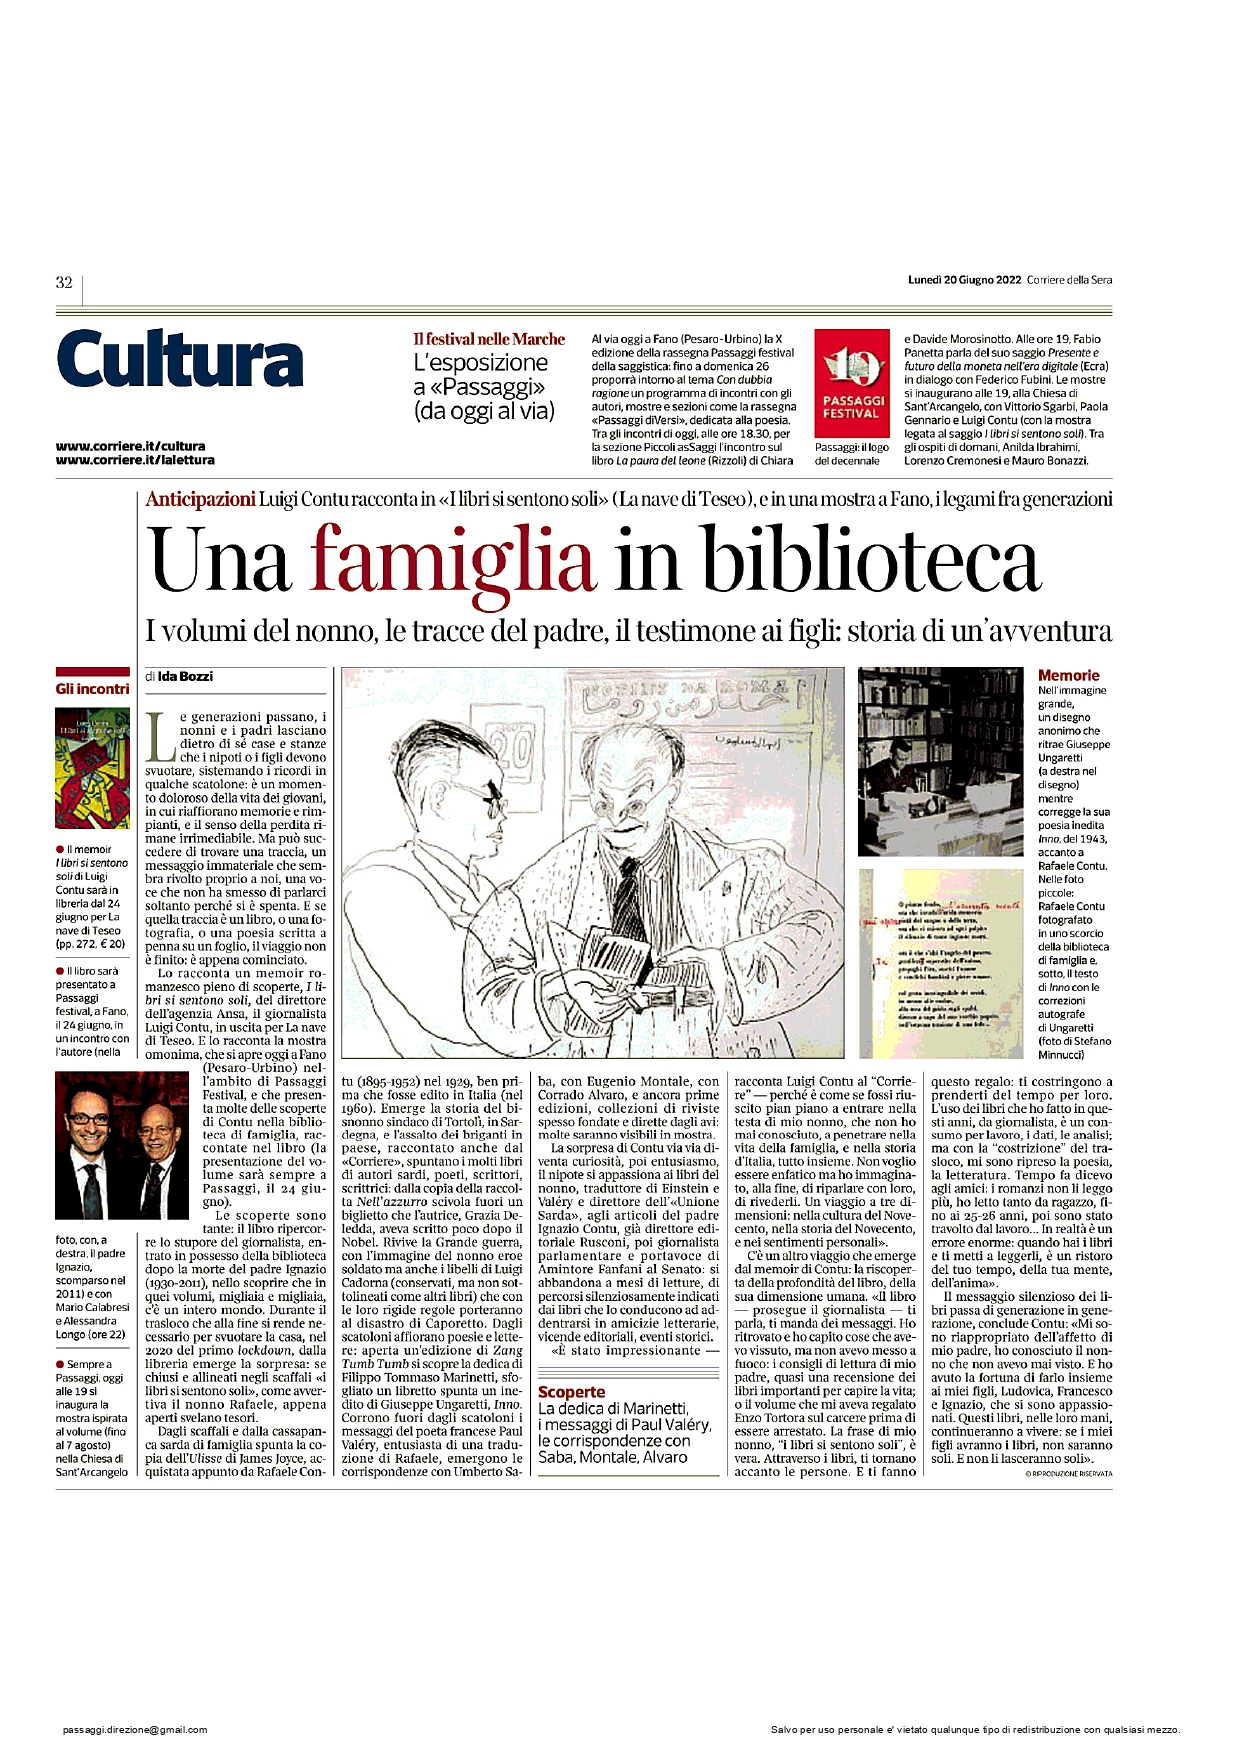 Corriere-della-Sera-una-famiglia-in-biblioteca.